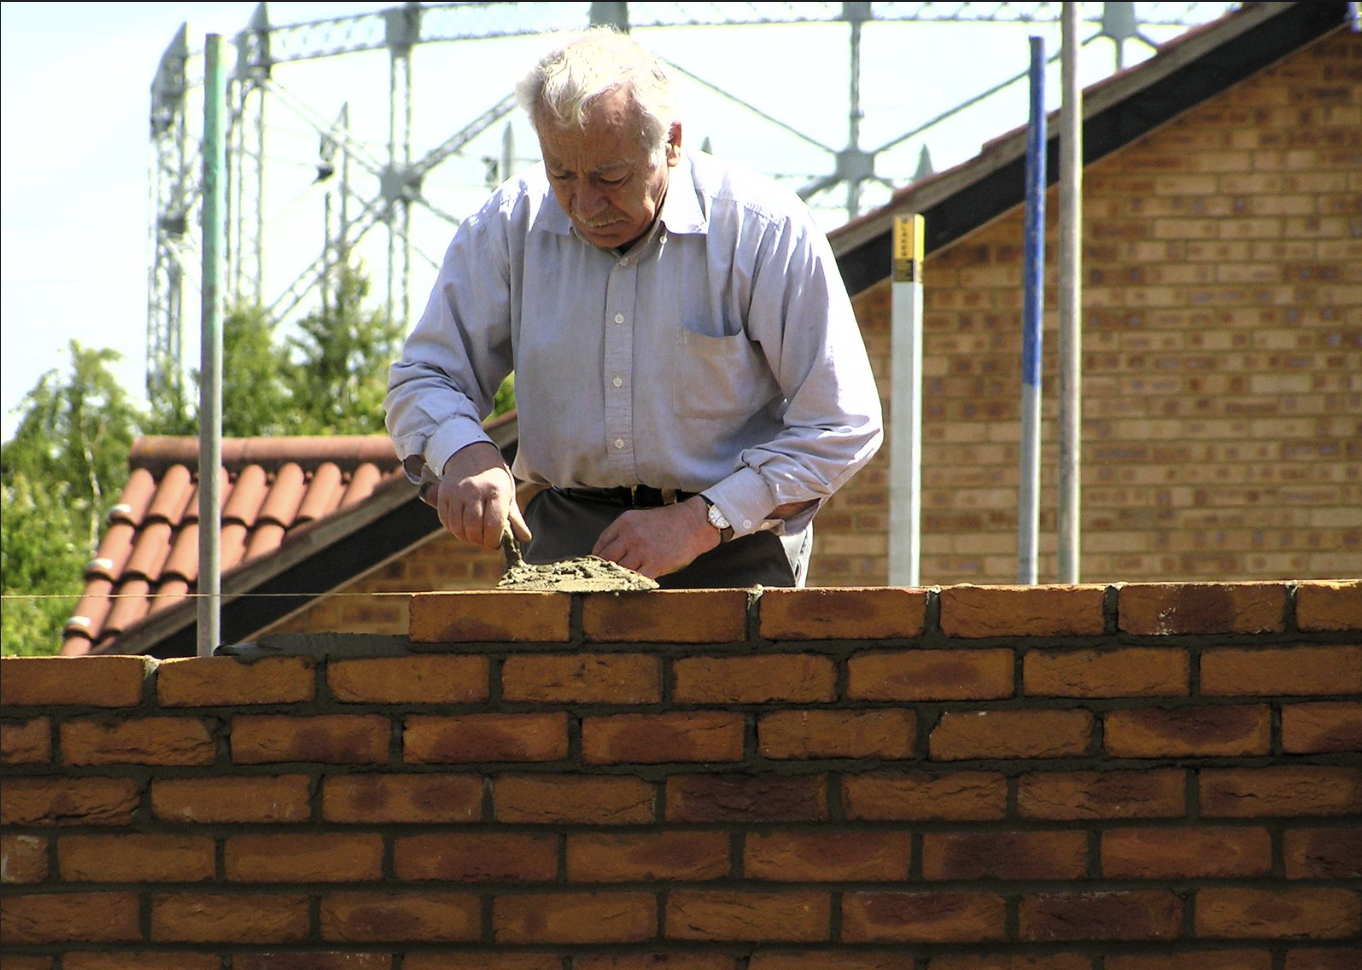 A man laying brick.